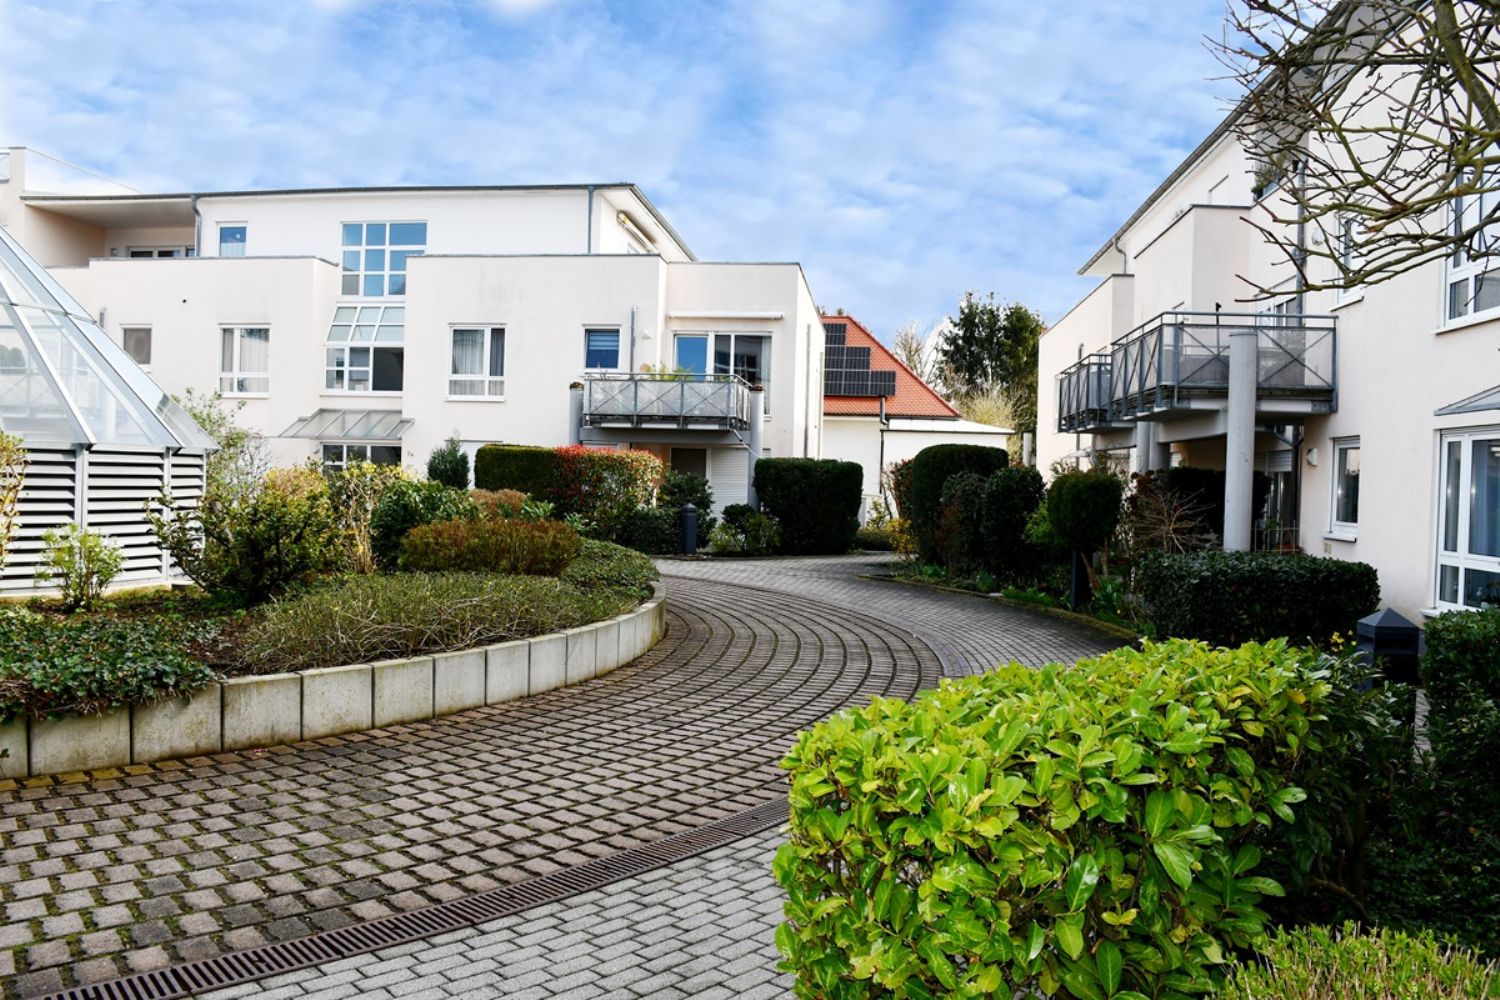 **RESERVIERT** Schicke 2-Zimmer-Wohnung mit Terrasse und Pkw-Stellplatz, in zentraler und ruhiger Lage von Darmstadt-Eberstadt!